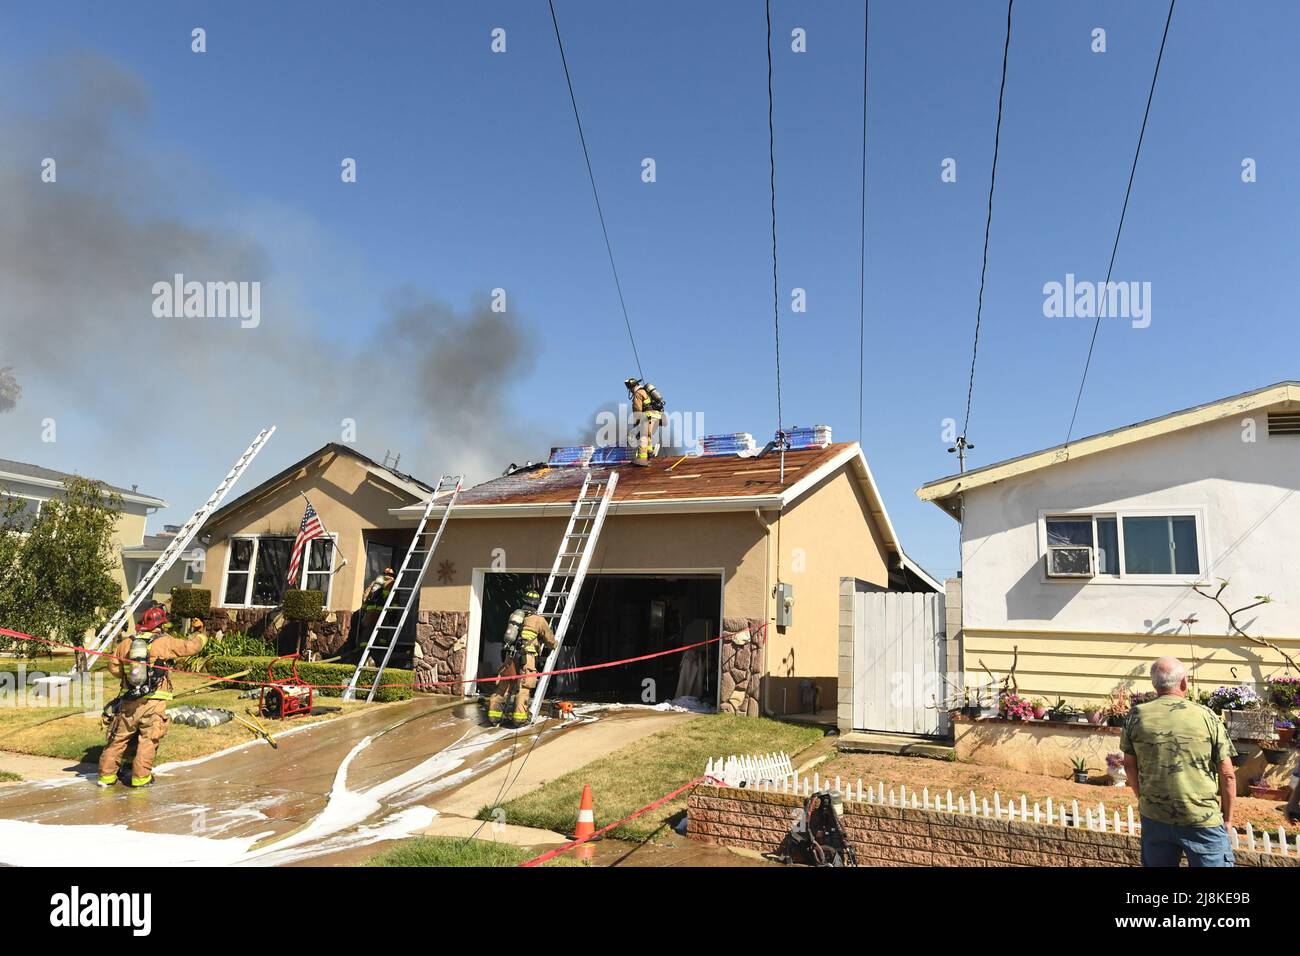 Ein Hausbrand im Stadtteil Kearny Mesa von San Diego führte zu einem ersten Alarmeinsatz der Feuerwehr von San Diego. Das sich schnell bewegende Feuer zerstörte den Wohnteil des Hauses, wobei nur die Garage die Flammen überlebte. Nach einem vollständigen Dacheinsturz über den Wohnräumen mussten die Feuerwehrleute eine Luftleiter verwenden, um die Flammen zu löschen. Die beiden Bewohner des Hauses entkamen unverletzt. Die Ursache des Feuers wurde durch die jüngsten Arbeiten am Dach der Konstruktion bestimmt und der Gesamtschadens wurde auf $400.000 USD festgesetzt. Stockfoto